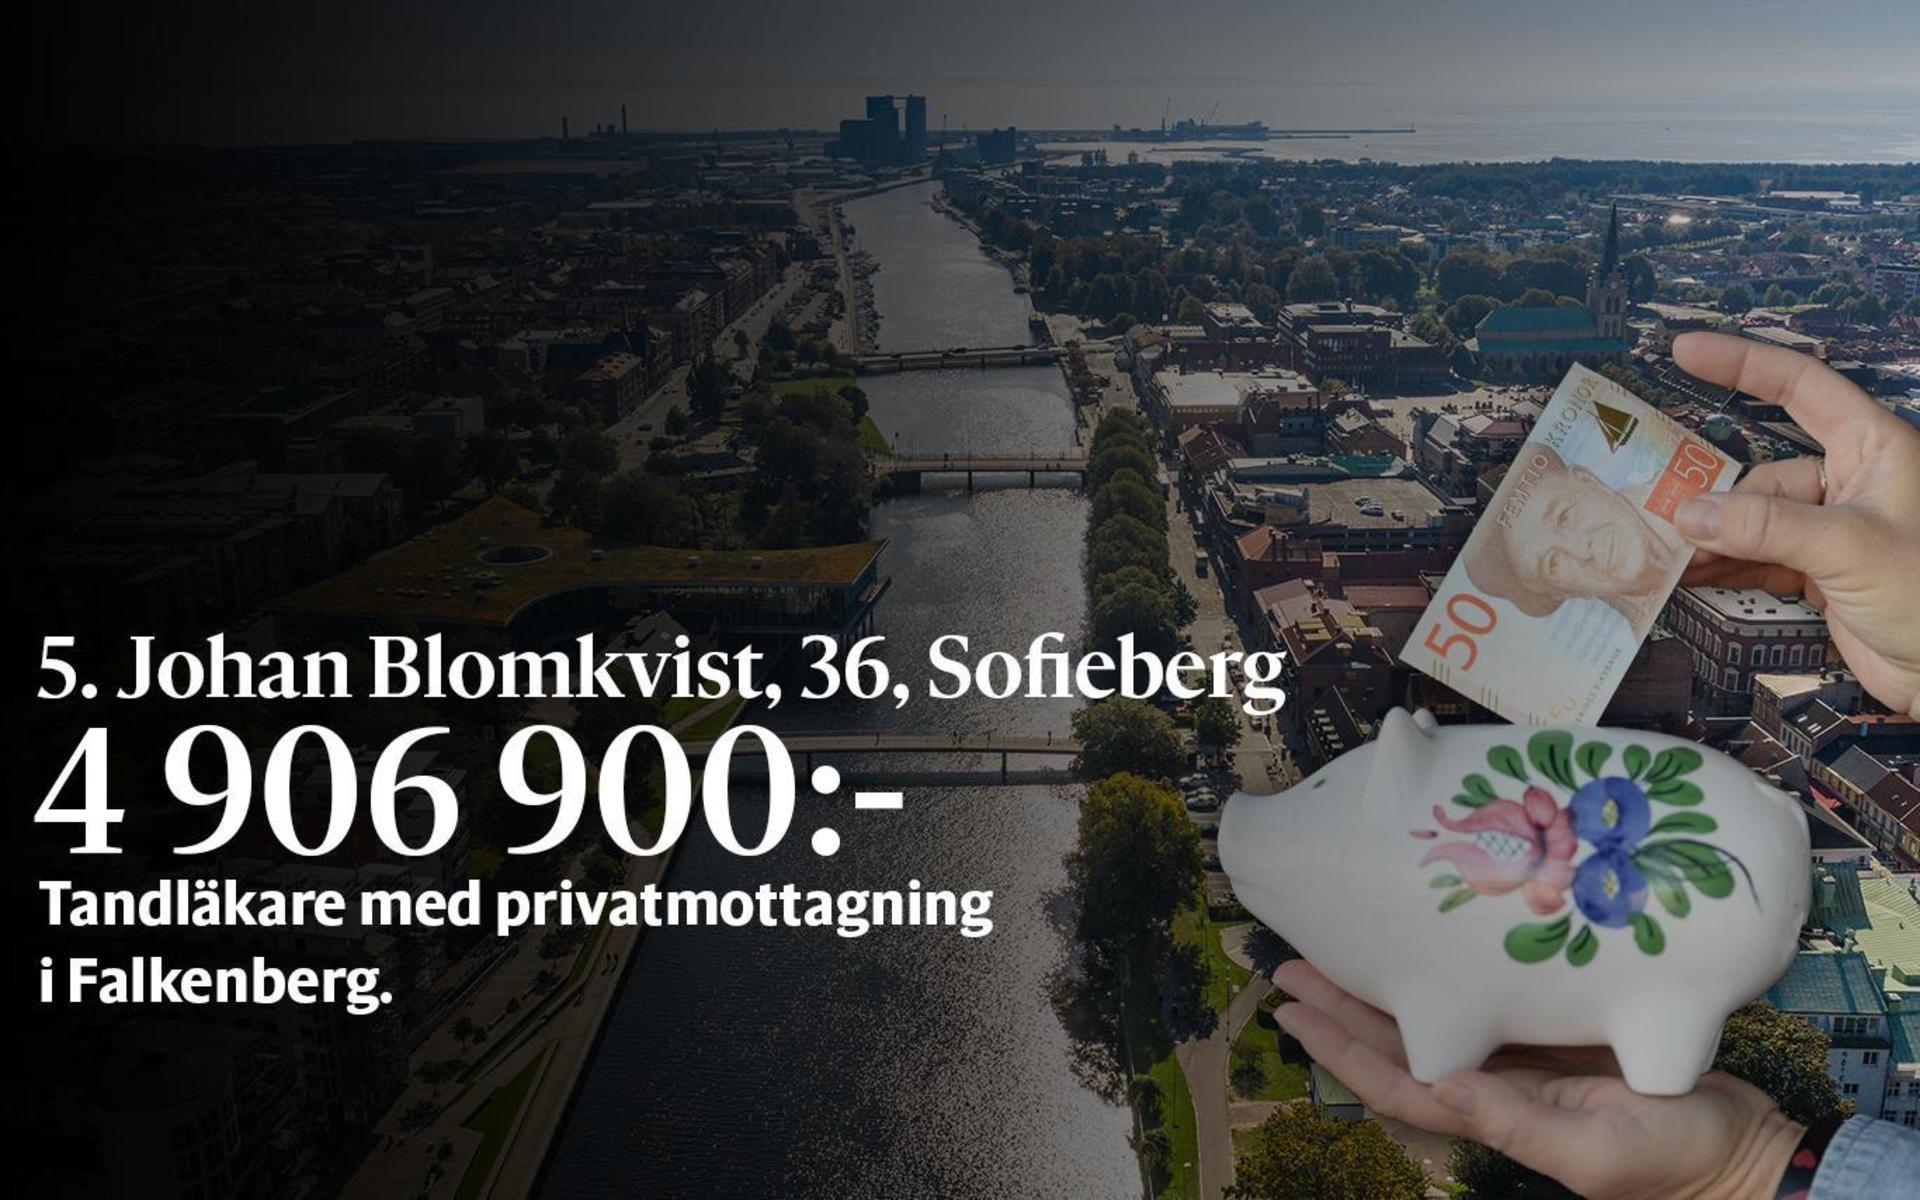 5. Johan Blomkvist, fastställd förvärvsinkomst på 4 906 900 kronor placerar honom på plats 52 i den totala inkomstligan i Halmstad.